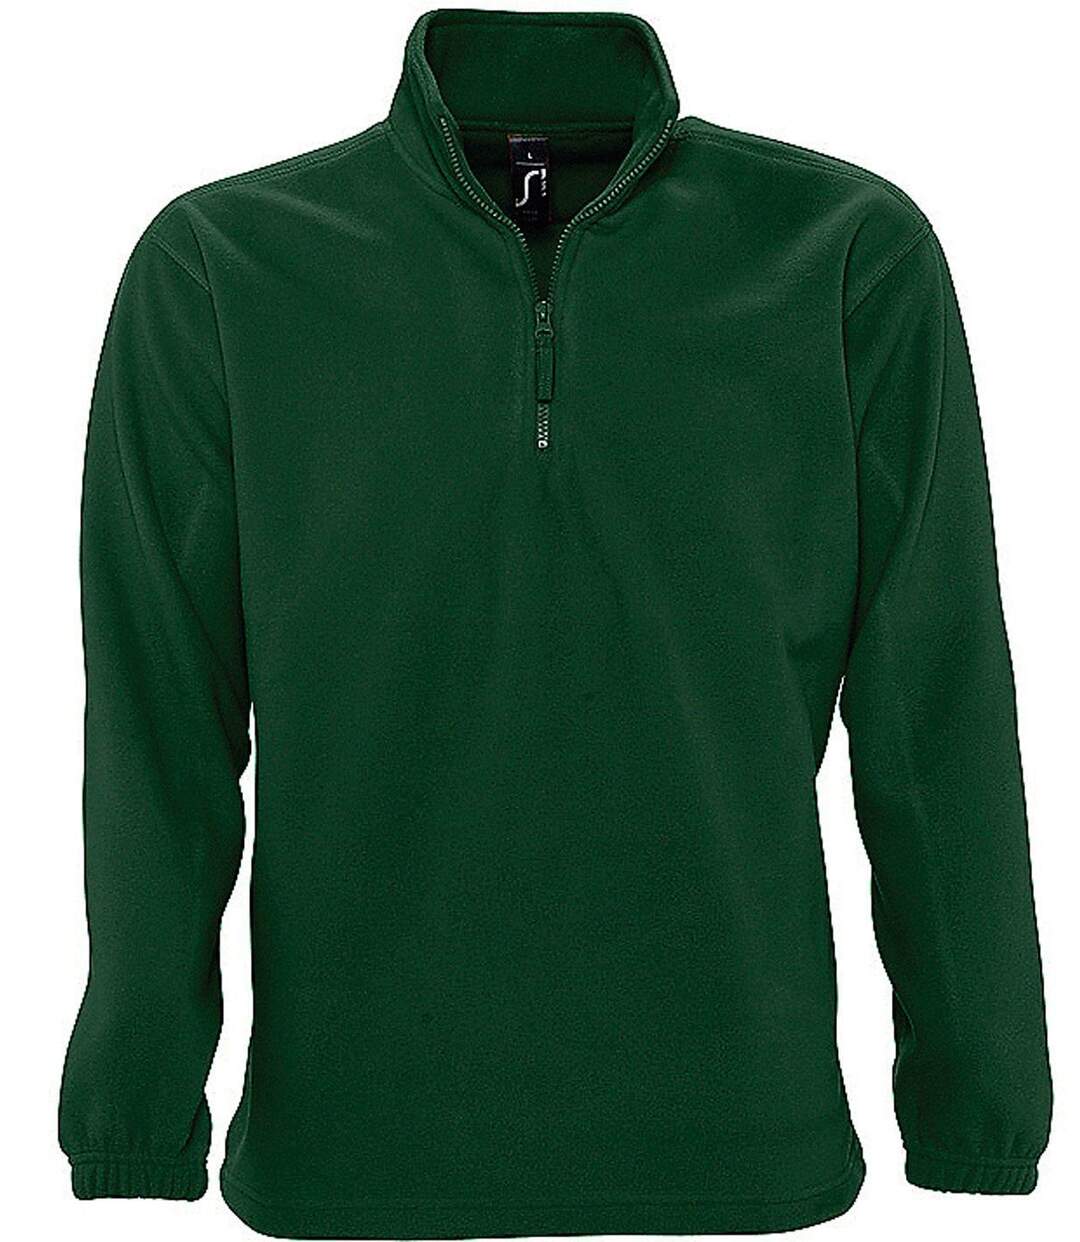 Sweat shirt polaire col zippé - 56000 - vert sapin